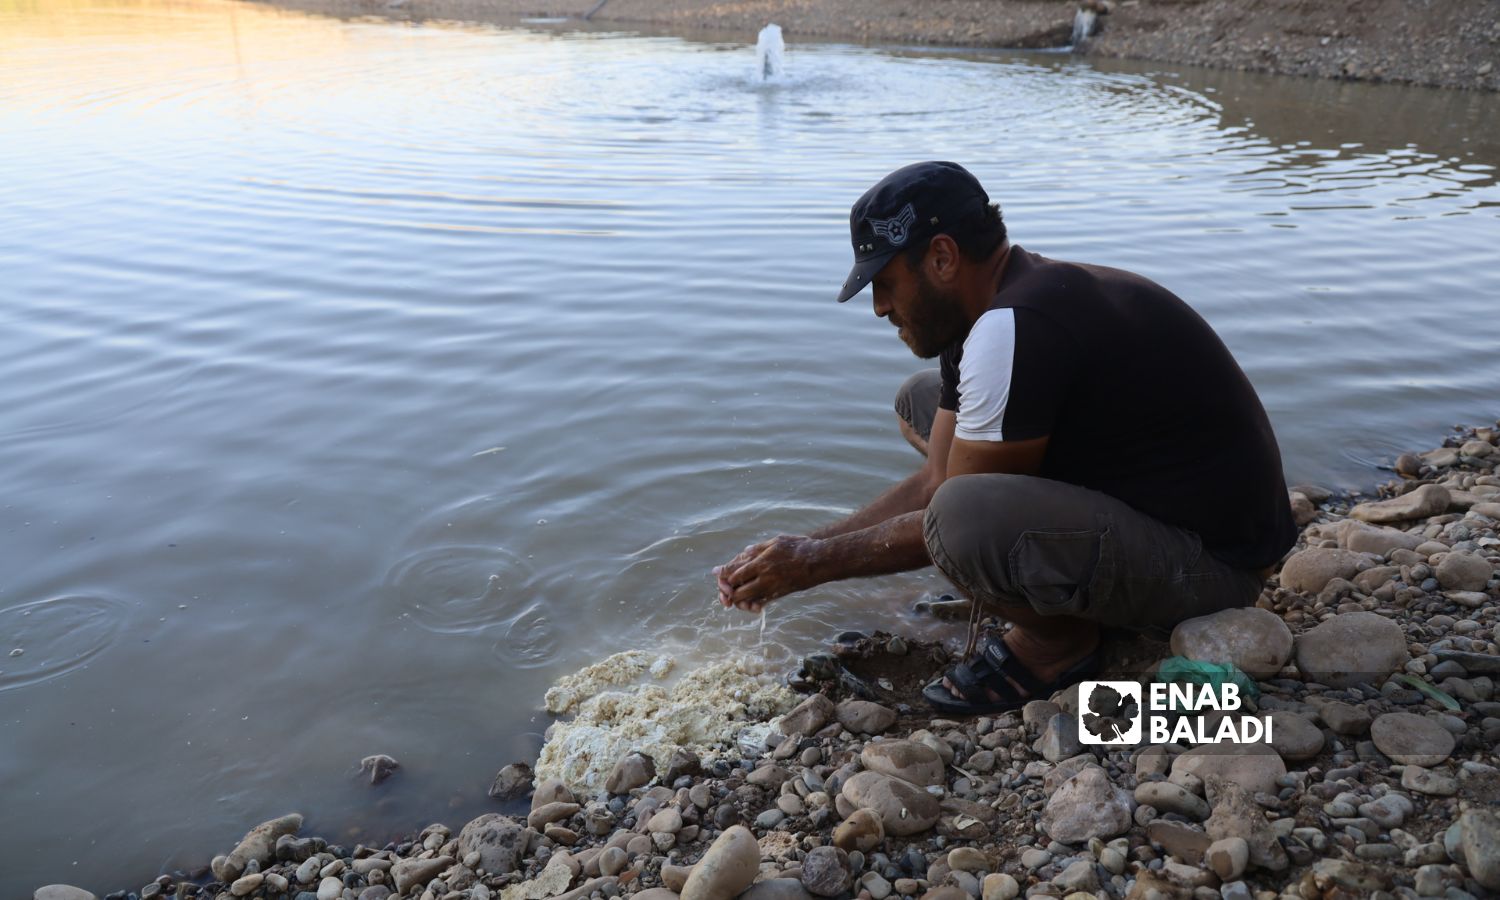 شاب يضع الطعام للأسماك في مزرعة بمنطقة عفرين بريف حلب الشمالي - 11 أيلول 2022 (عنب بلدي / أمير خربطلي)